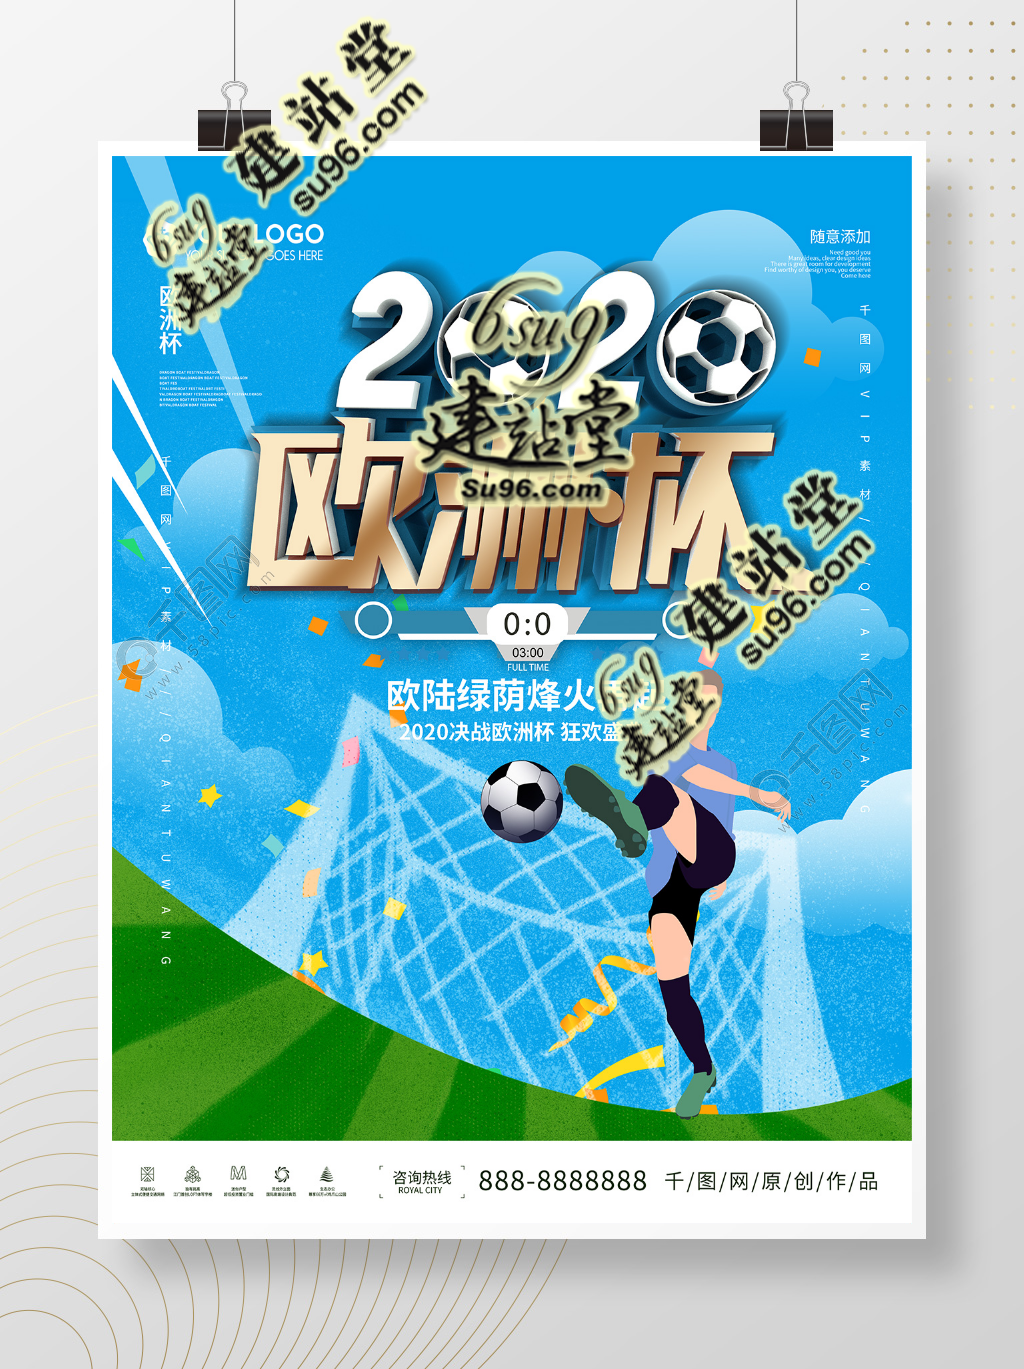 建站堂_简约2020年欧洲杯足球活动宣传海报_图片编号40268407.png